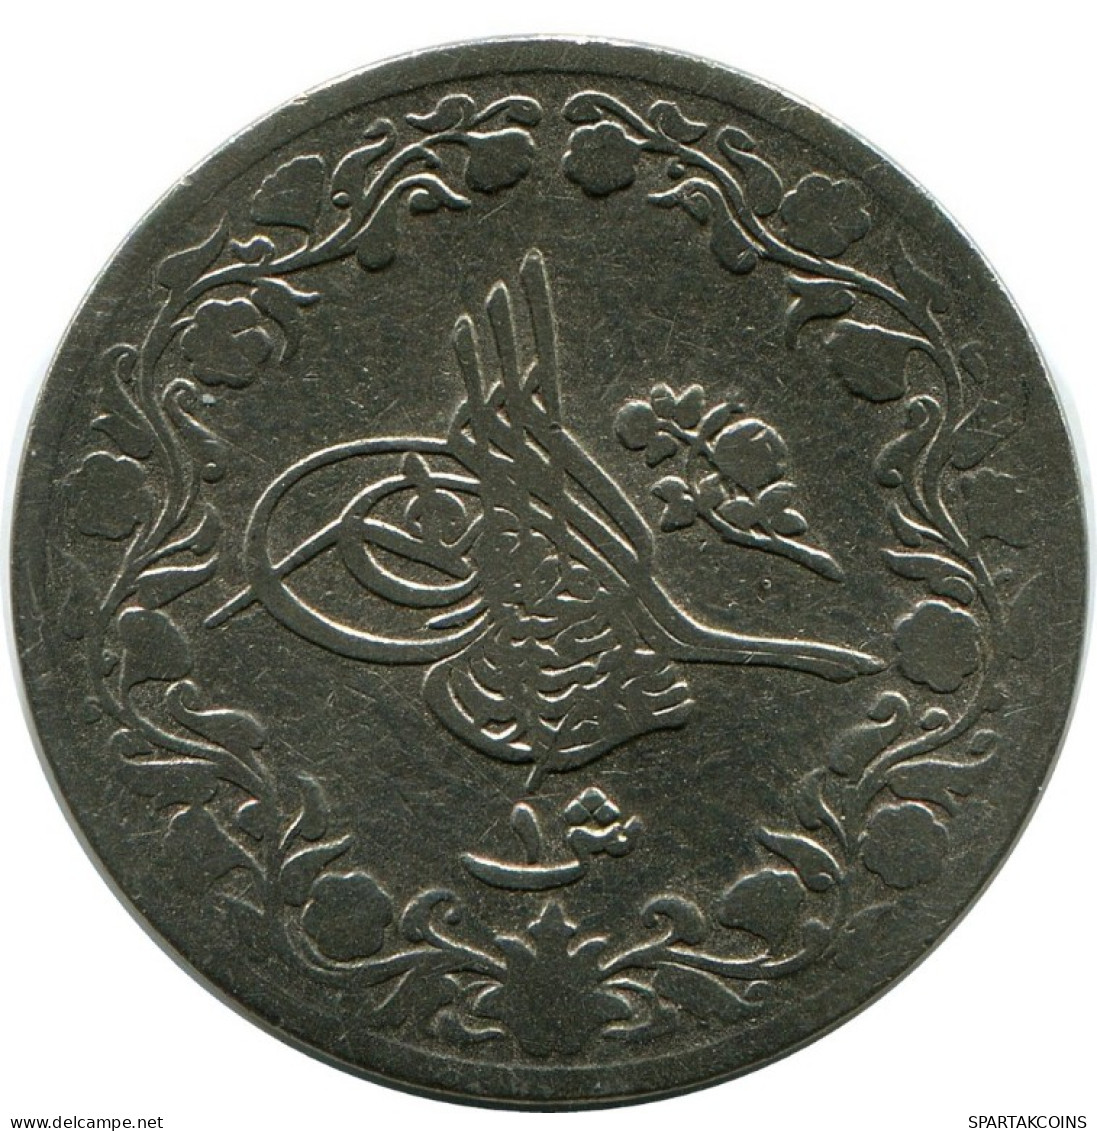 1 QIRSH 1899 EGYPT Islamic Coin #AH276.10.U.A - Egypt